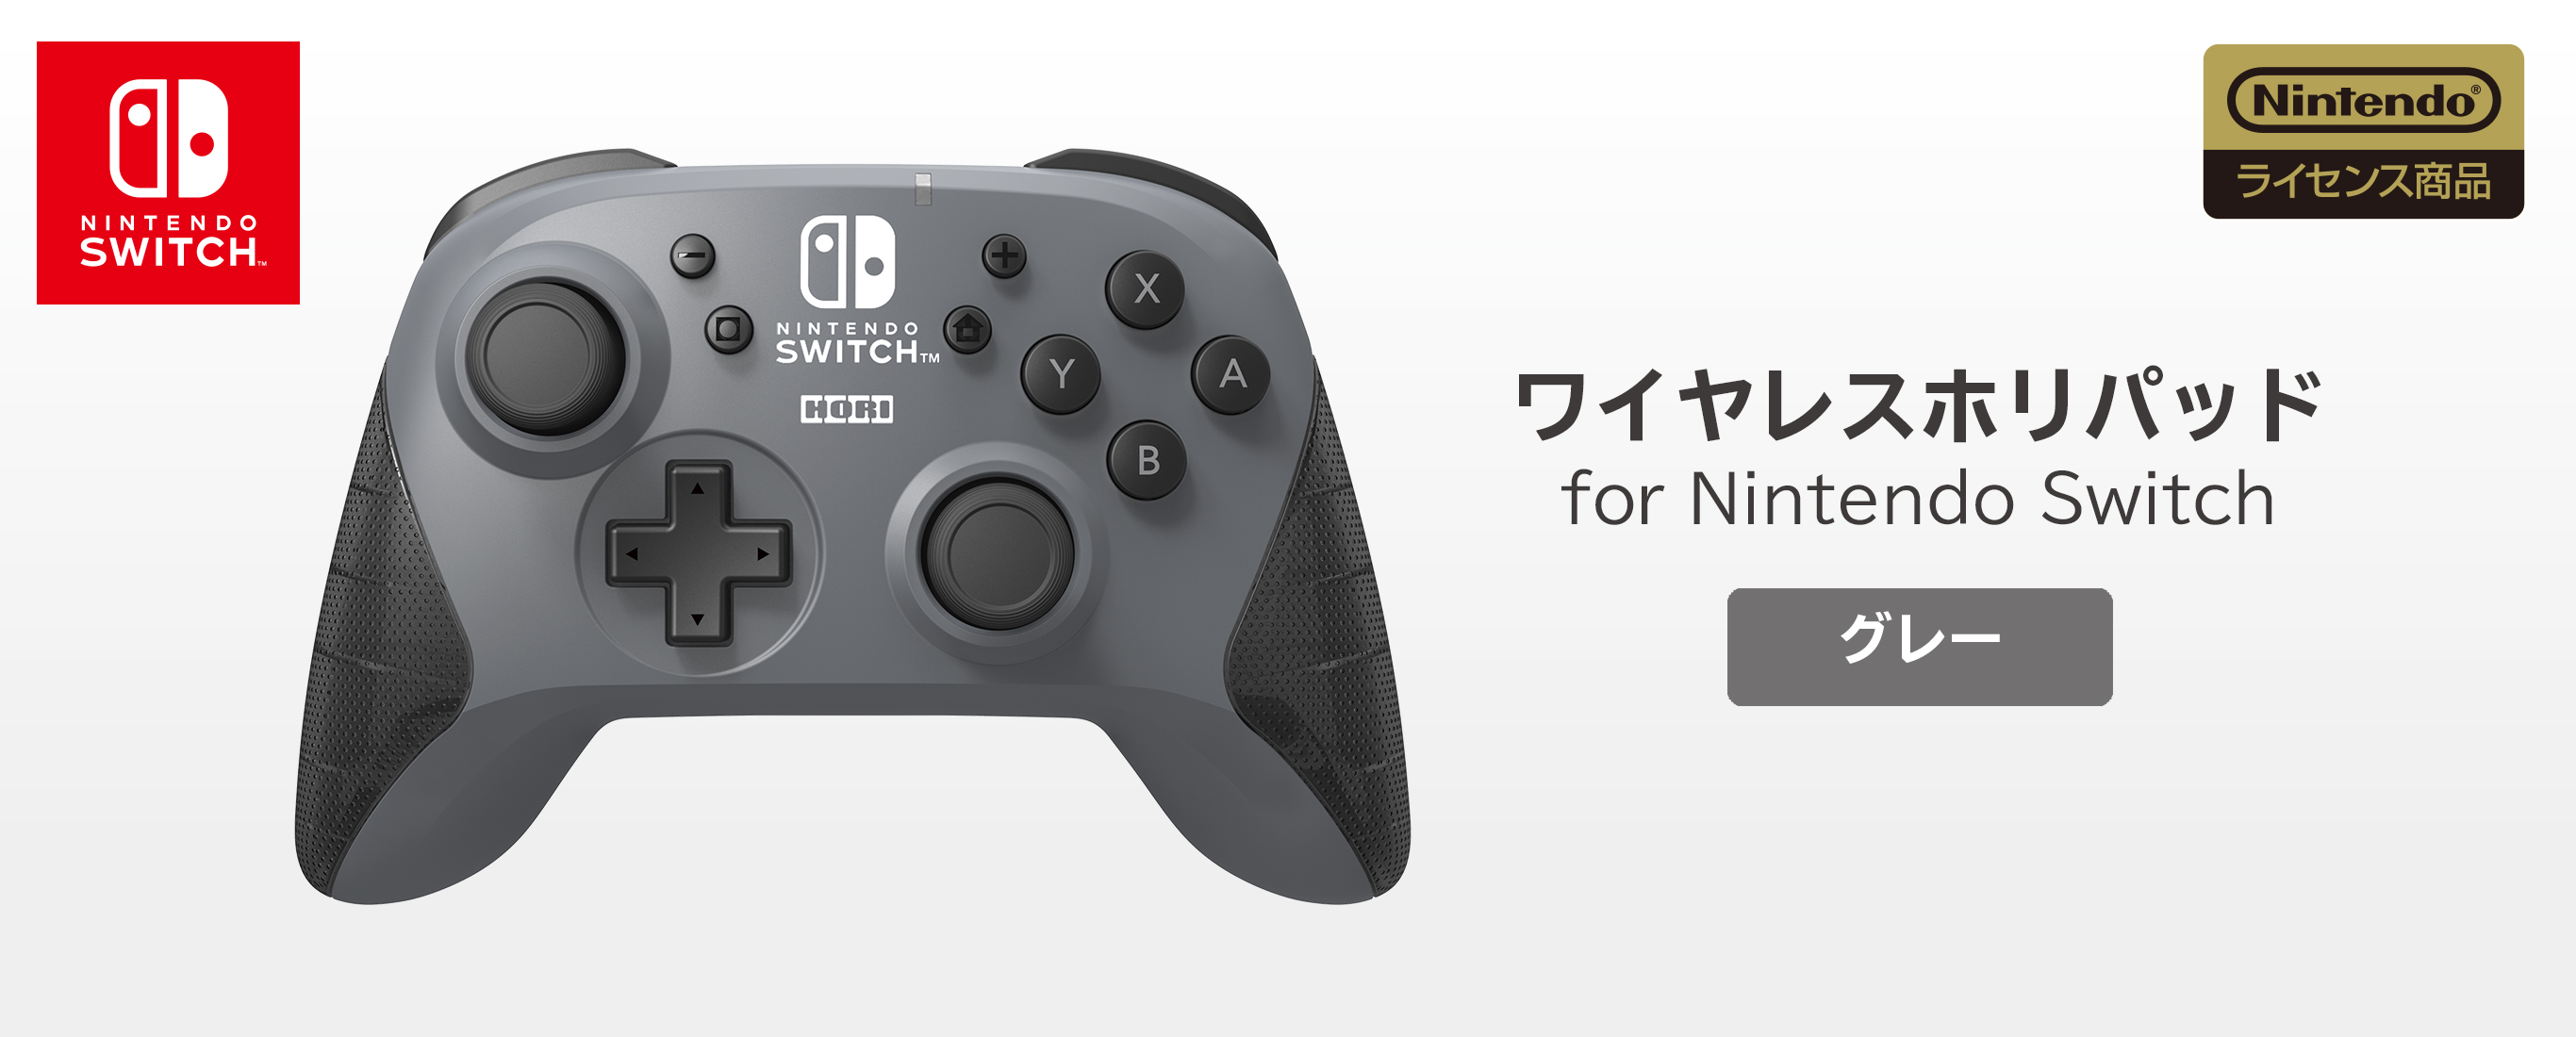 株式会社 HORI | ワイヤレスホリパッド for Nintendo Switch グレー